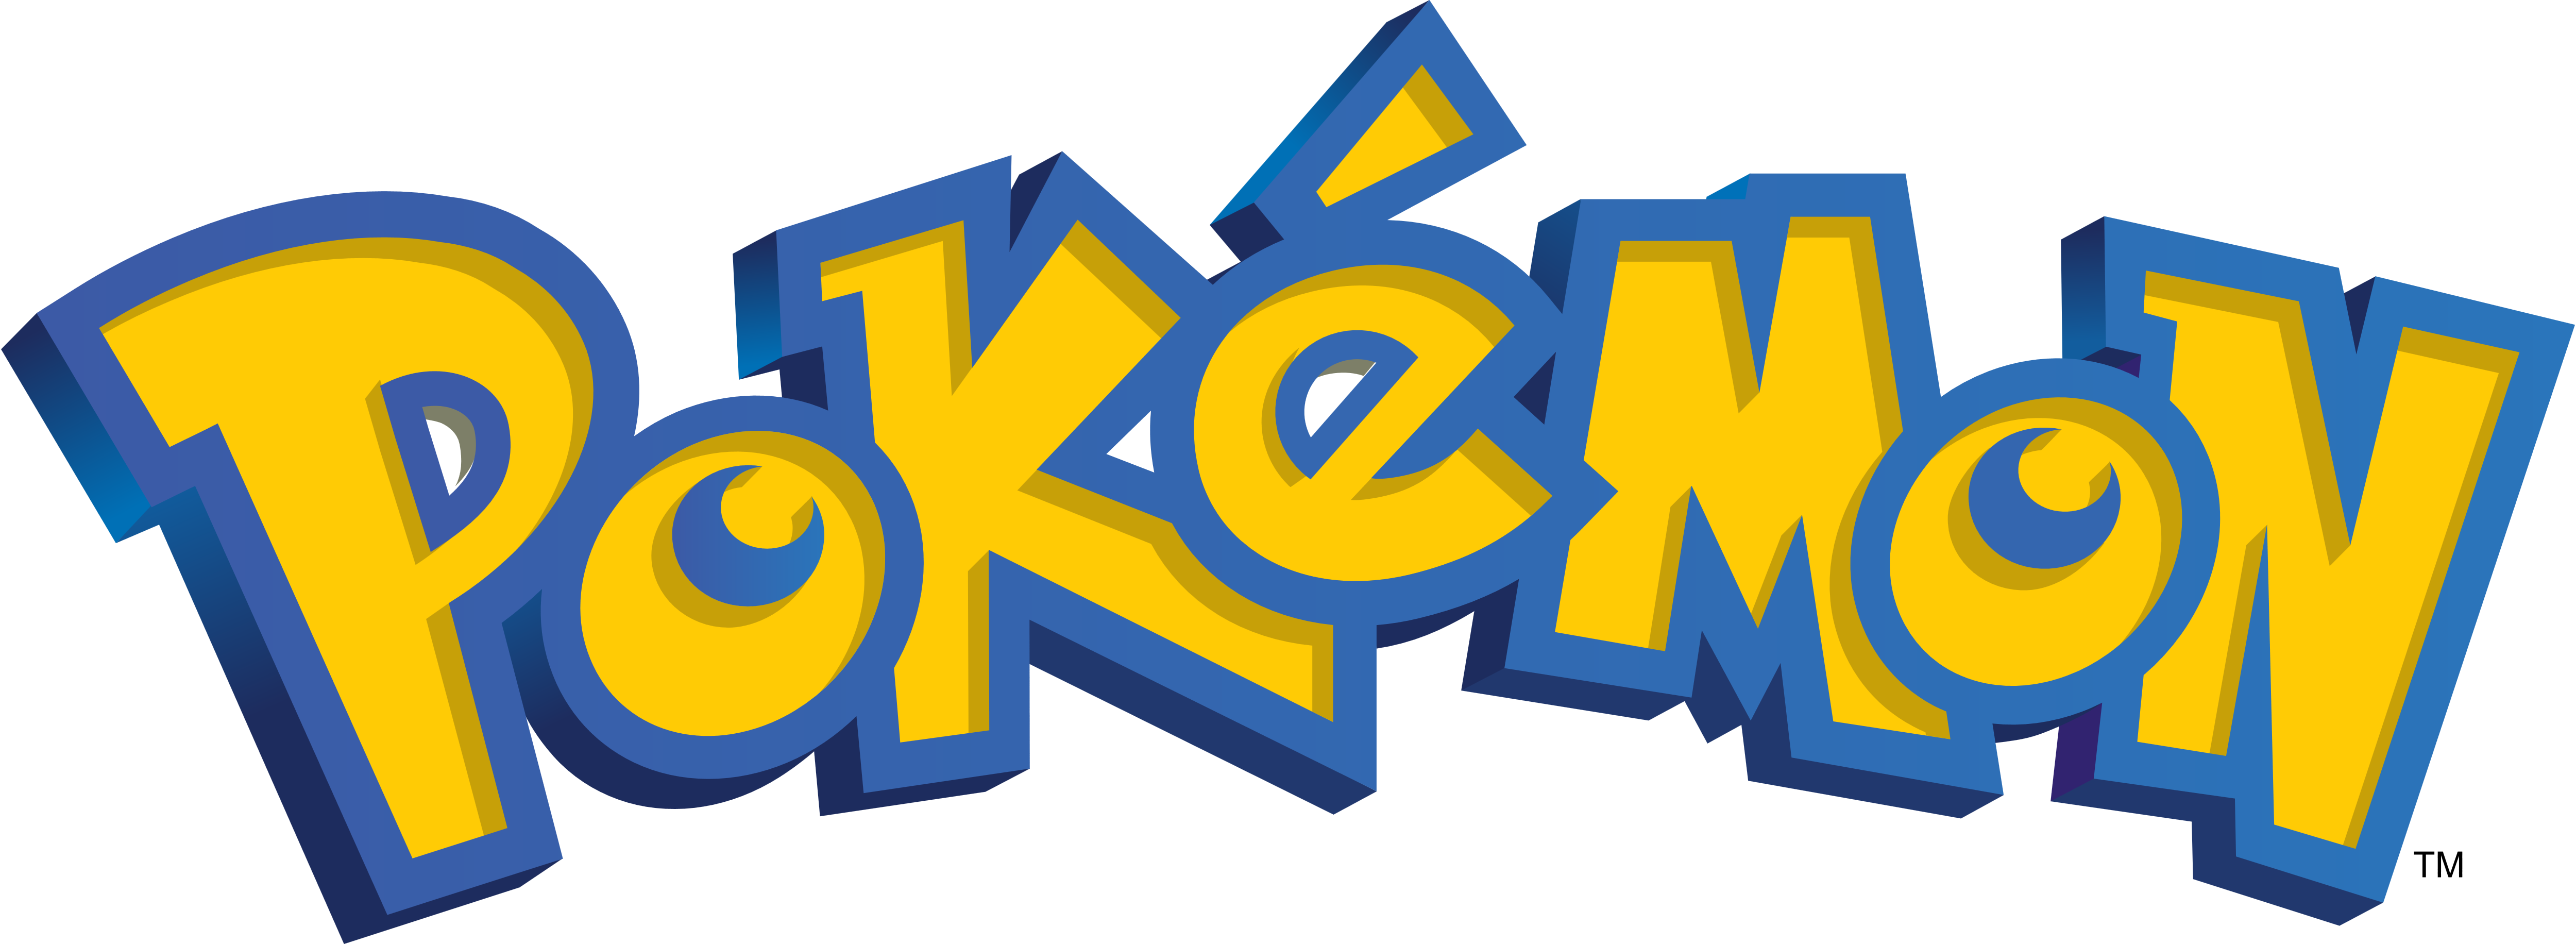 Pokemon Go Logos Download